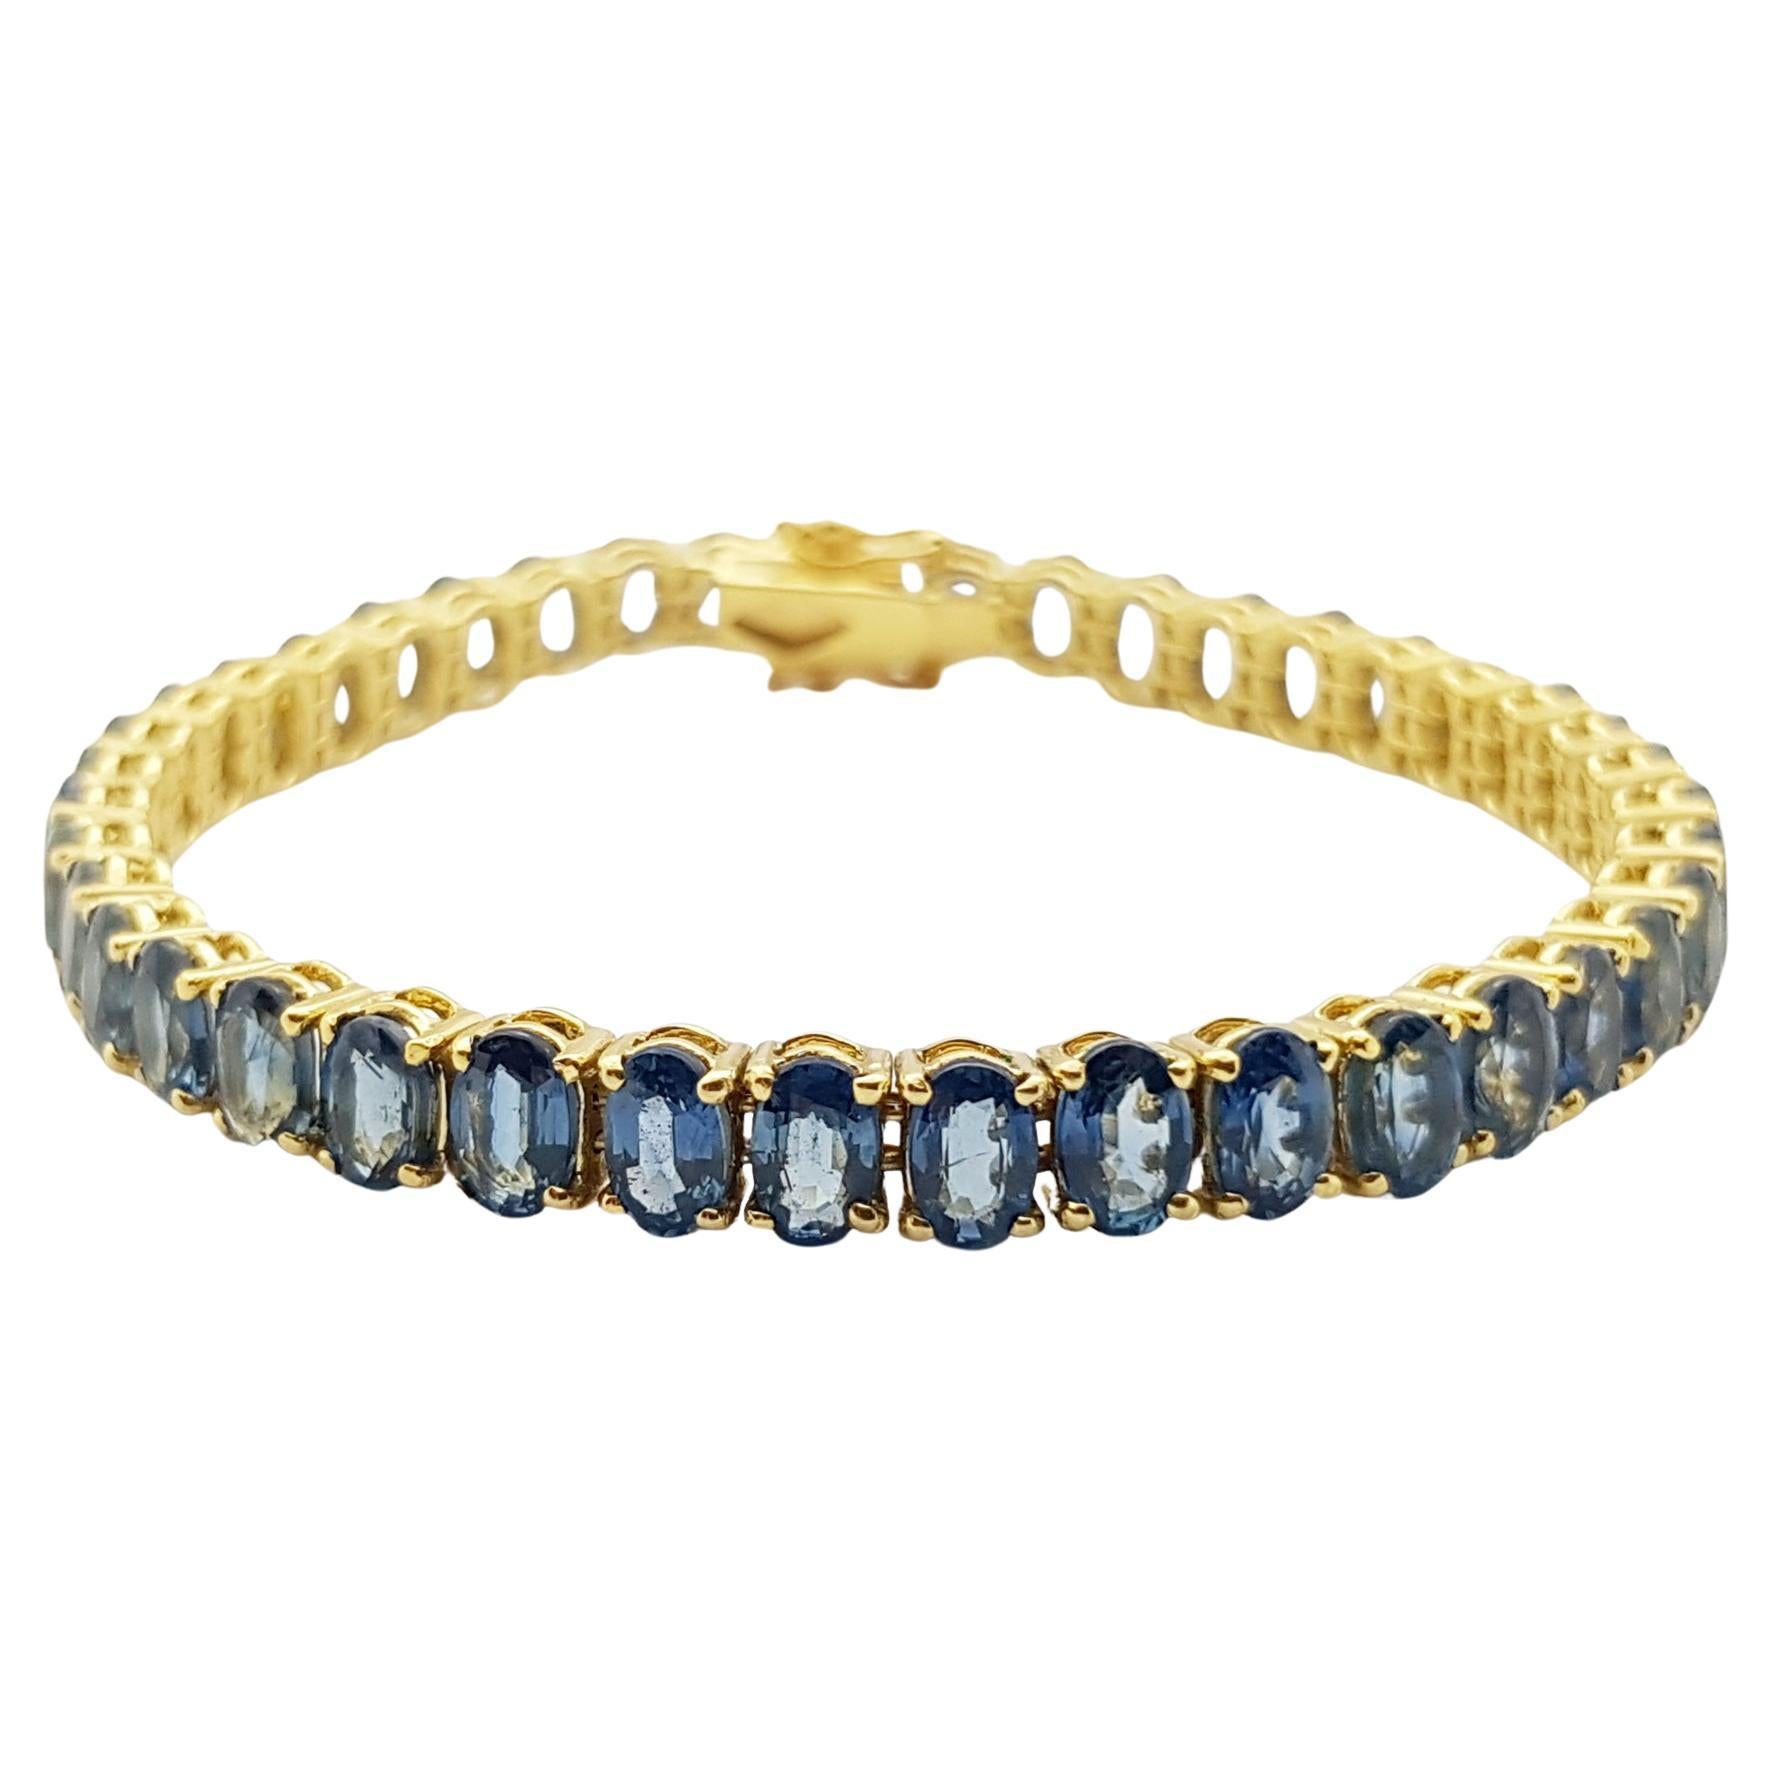 Bracelet de saphirs bleus sertis dans des montures en or 14 carats